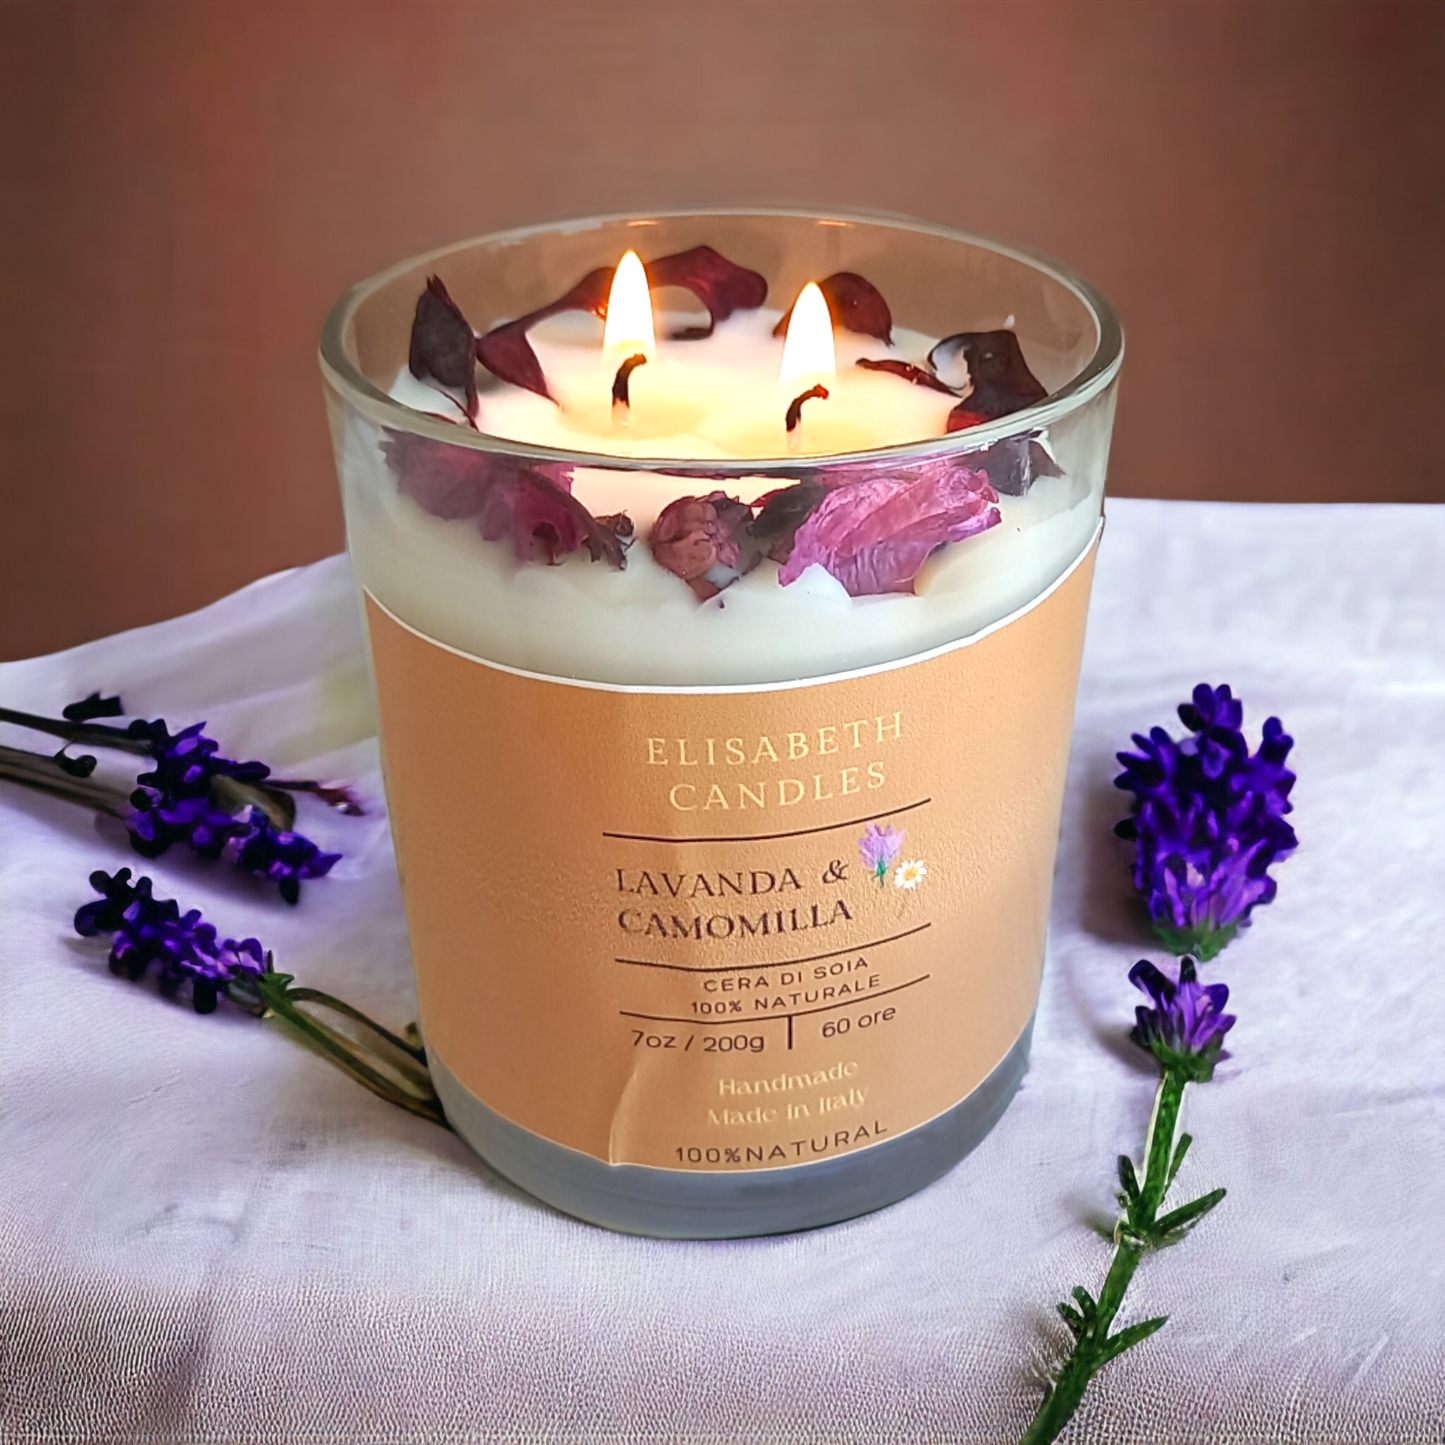 Candele di cera di soia decorate con fiori naturali e profumate con aromi freschi - Bottega delle creazioni